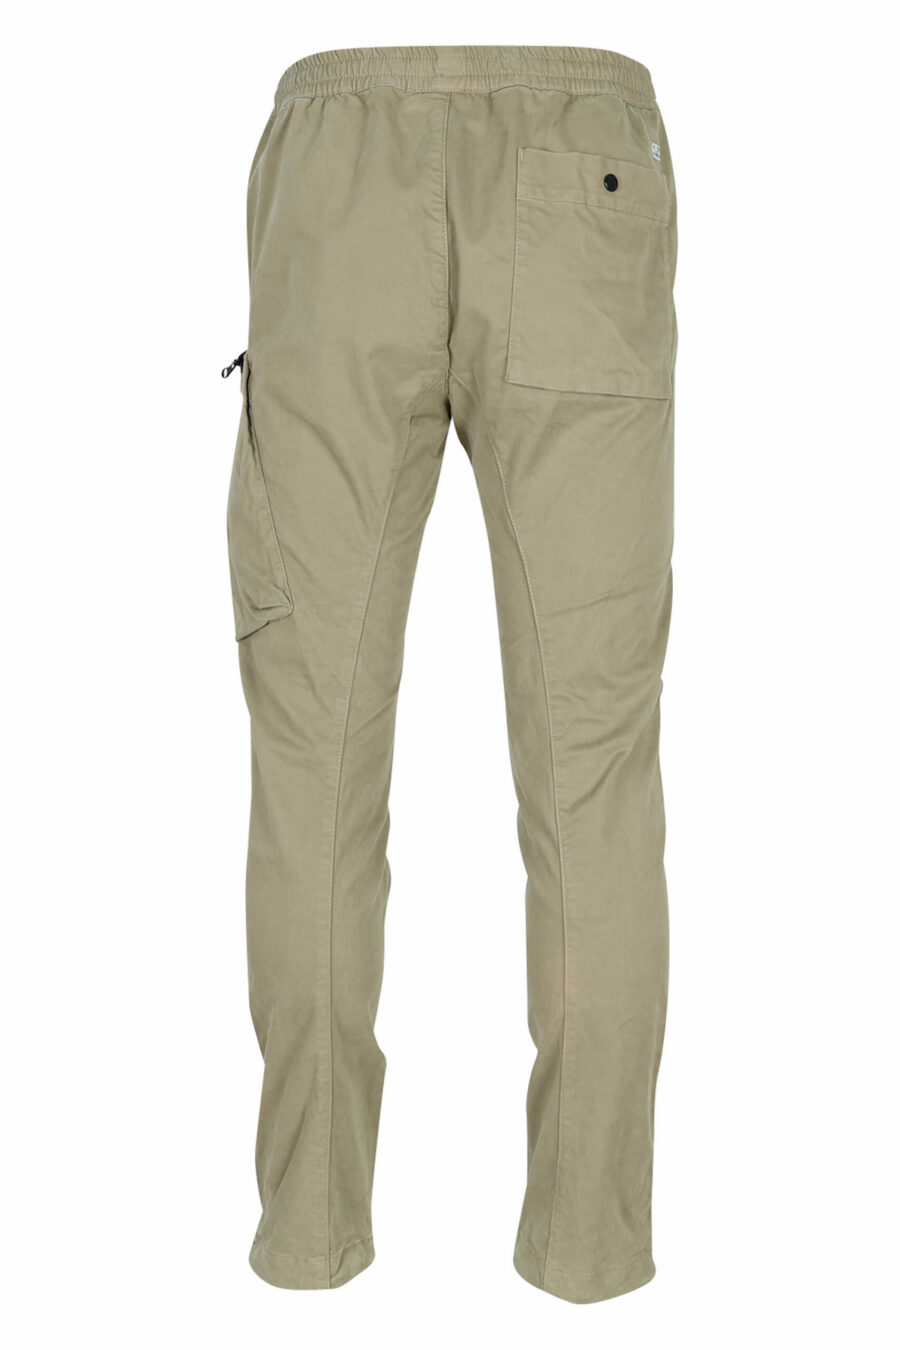 Pantalón beige de satén elástico con bolsillo lateral y logo lente - 7620943578416 2 scaled